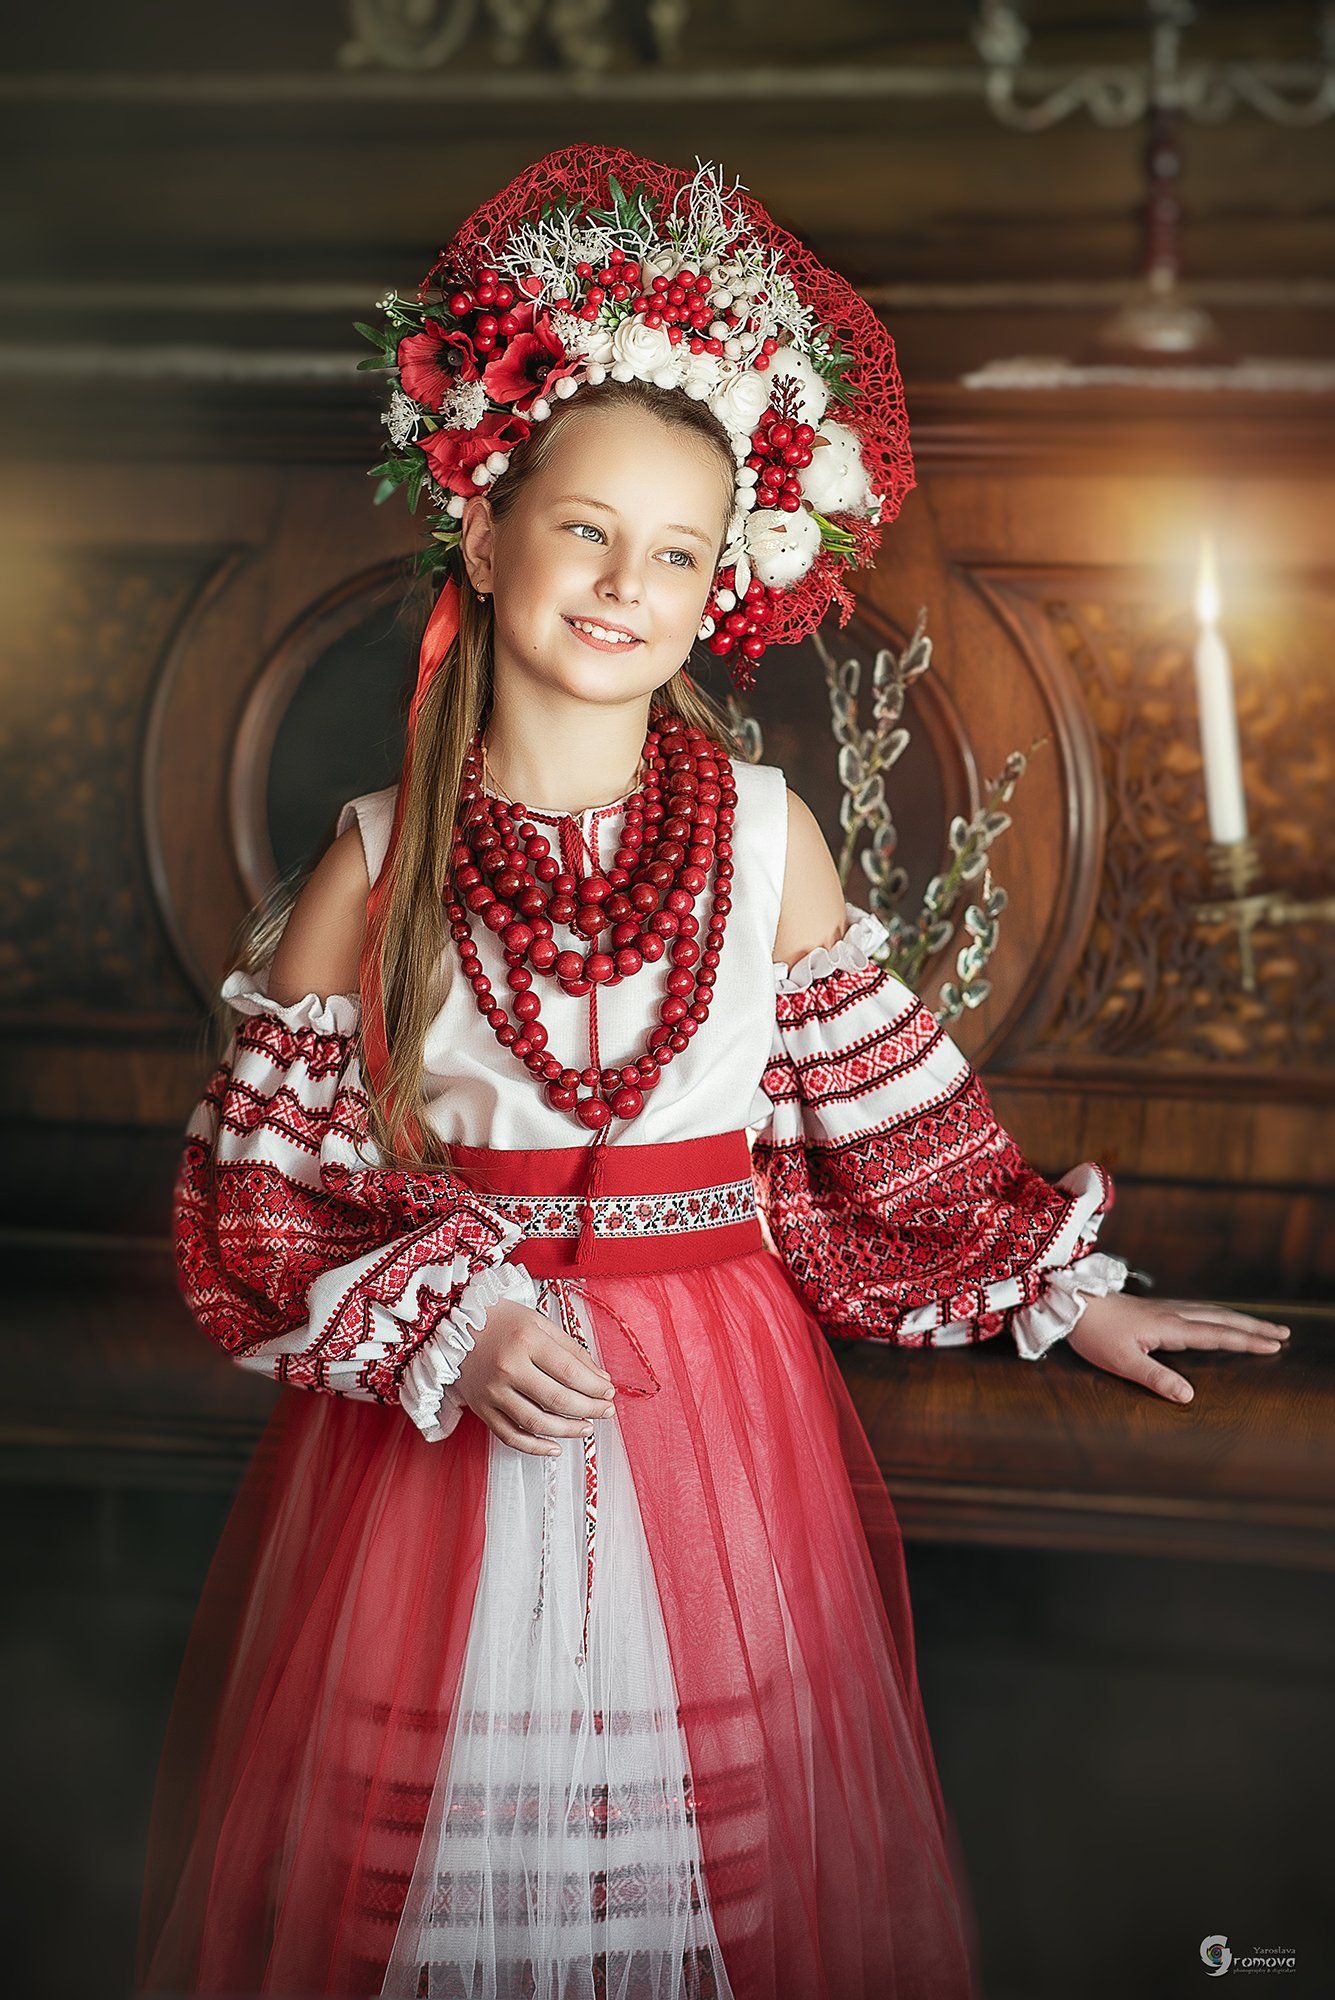 национальный костюм, этно, вышиванка, венок, вербное, воскресенье, пасха, праздник, детский портрет, Ярослава Громова